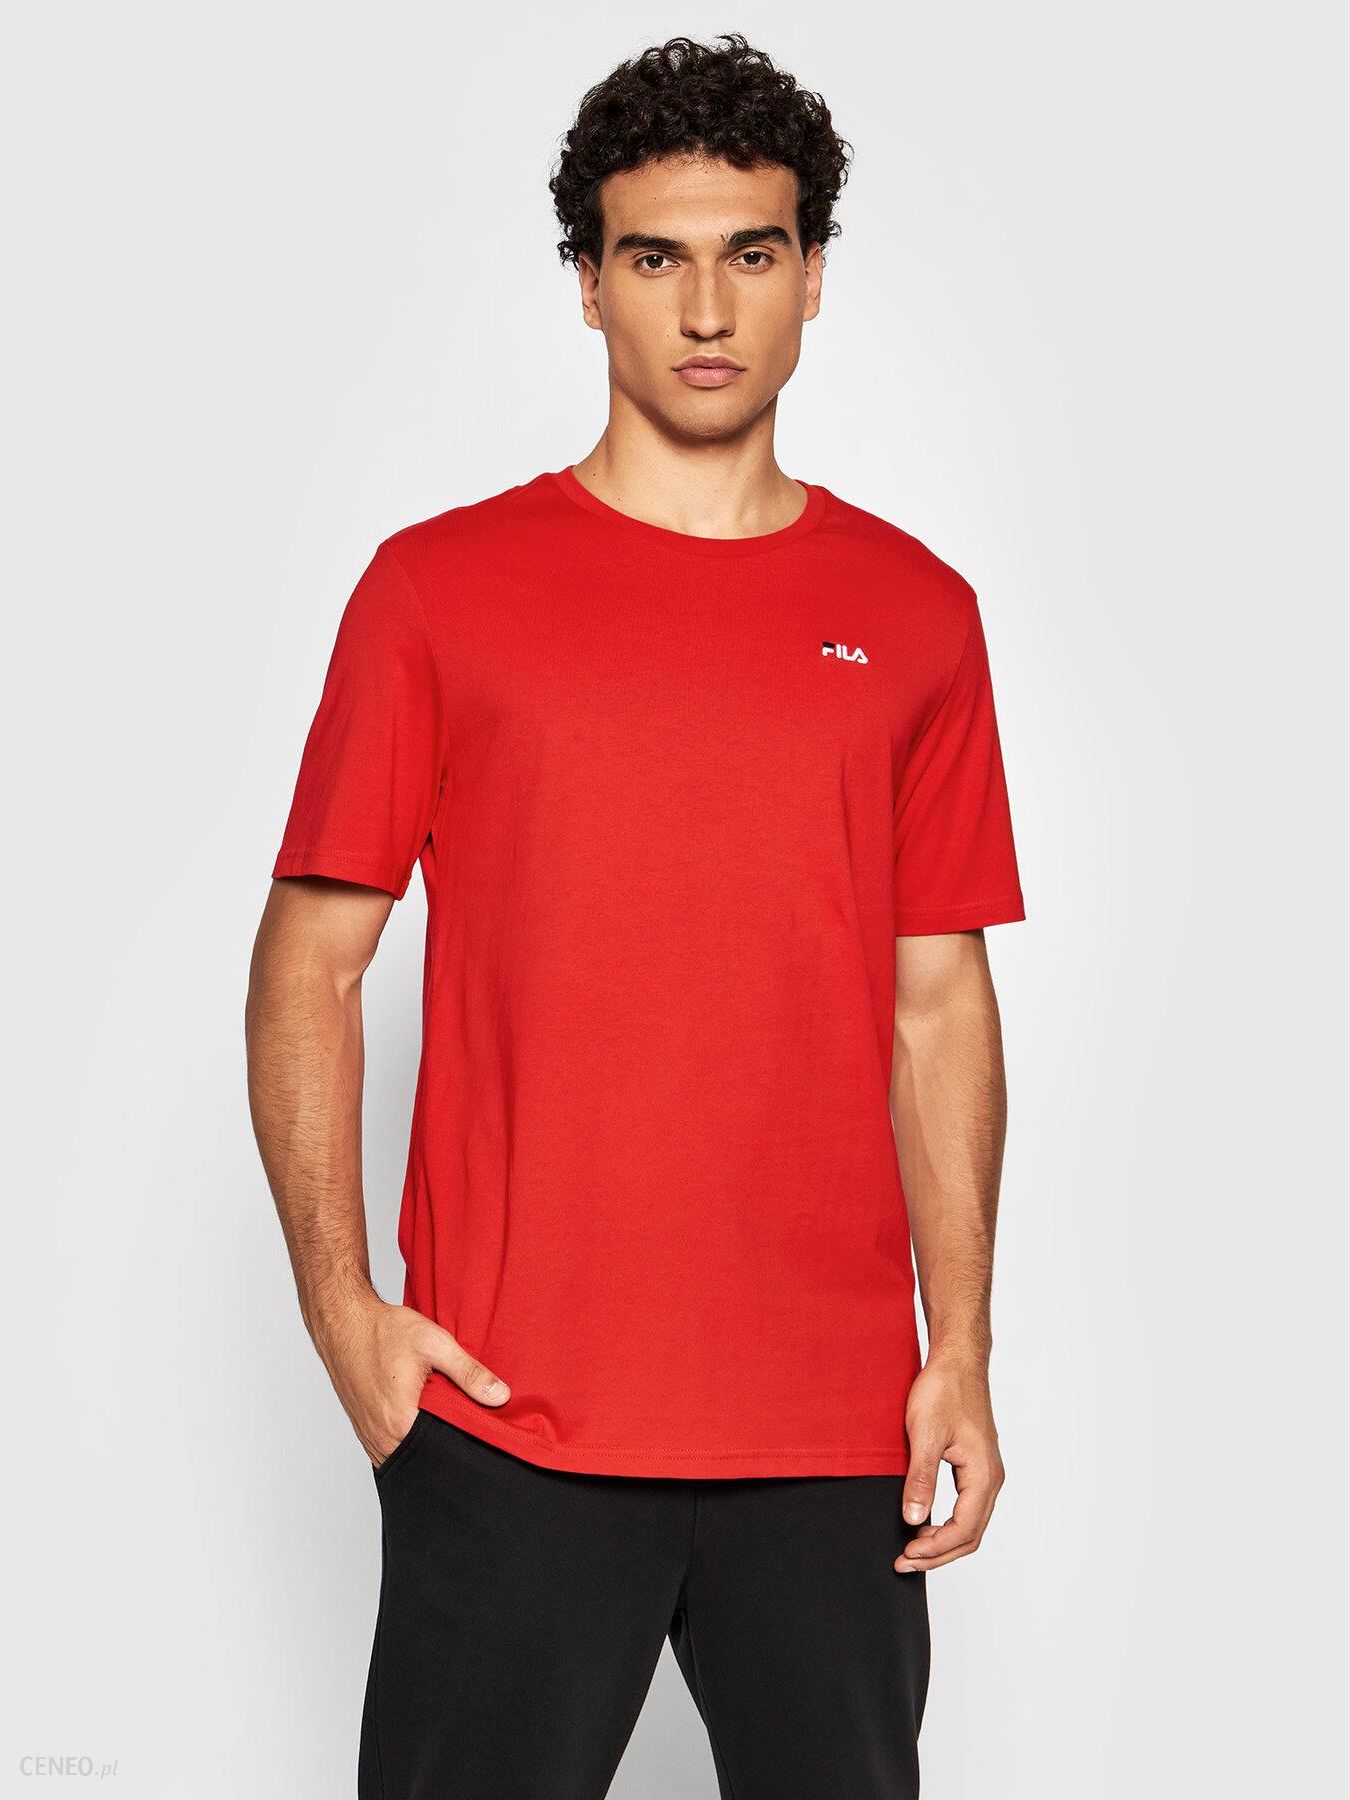 T-Shirt Edgar 689111 Czerwony Regular Fit - Ceny i - Ceneo.pl